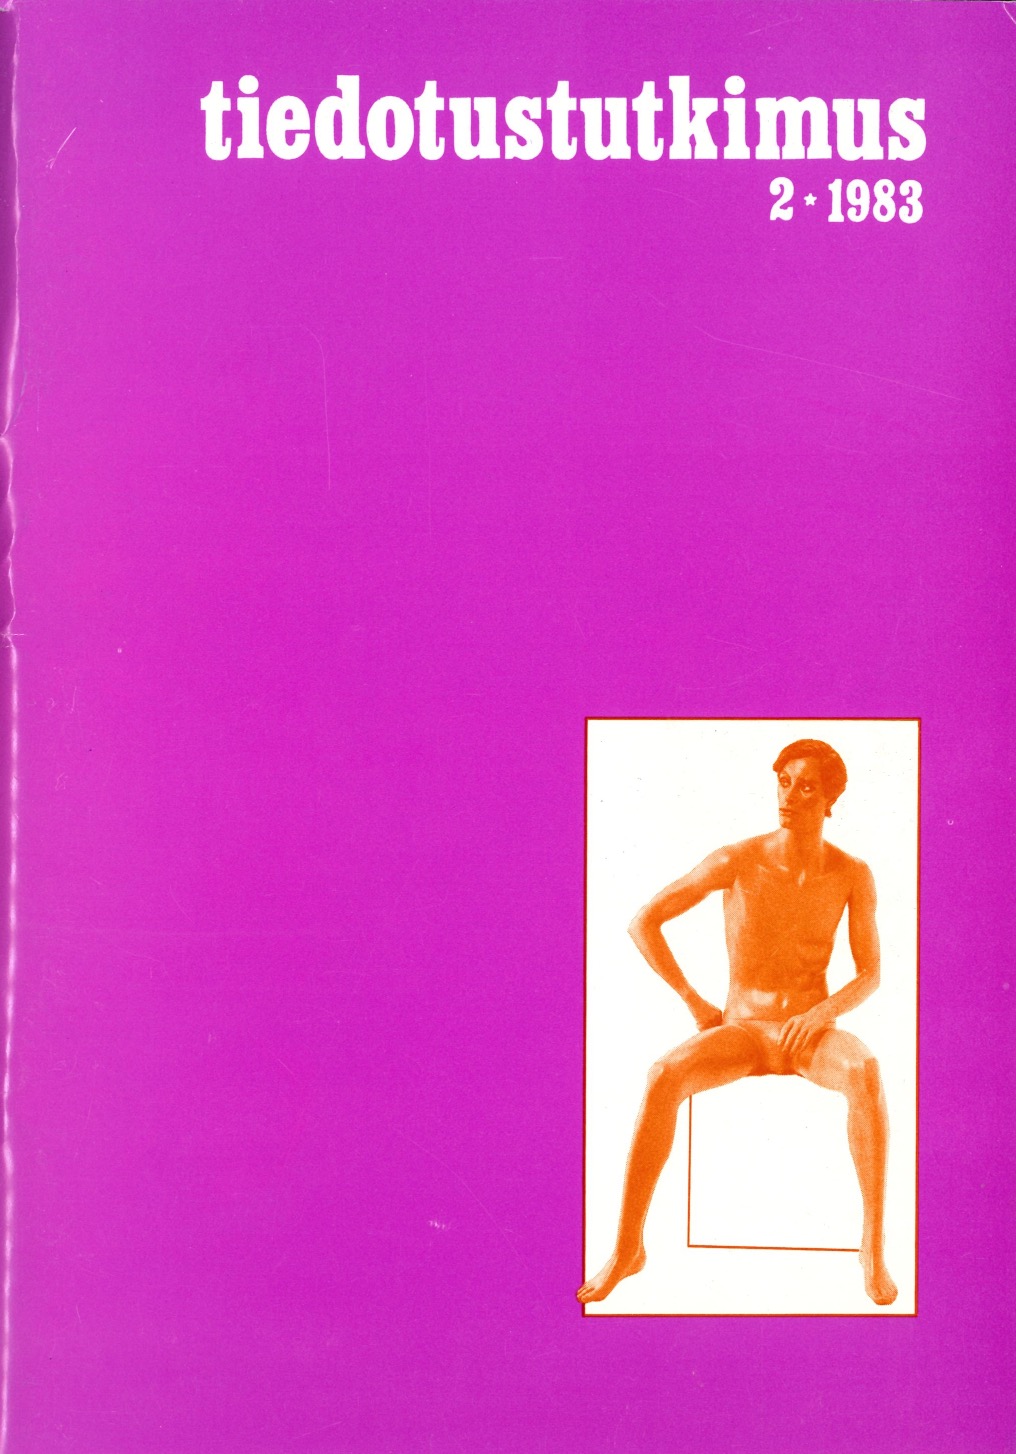 					Näytä Vol 6 Nro 2 (1983)
				